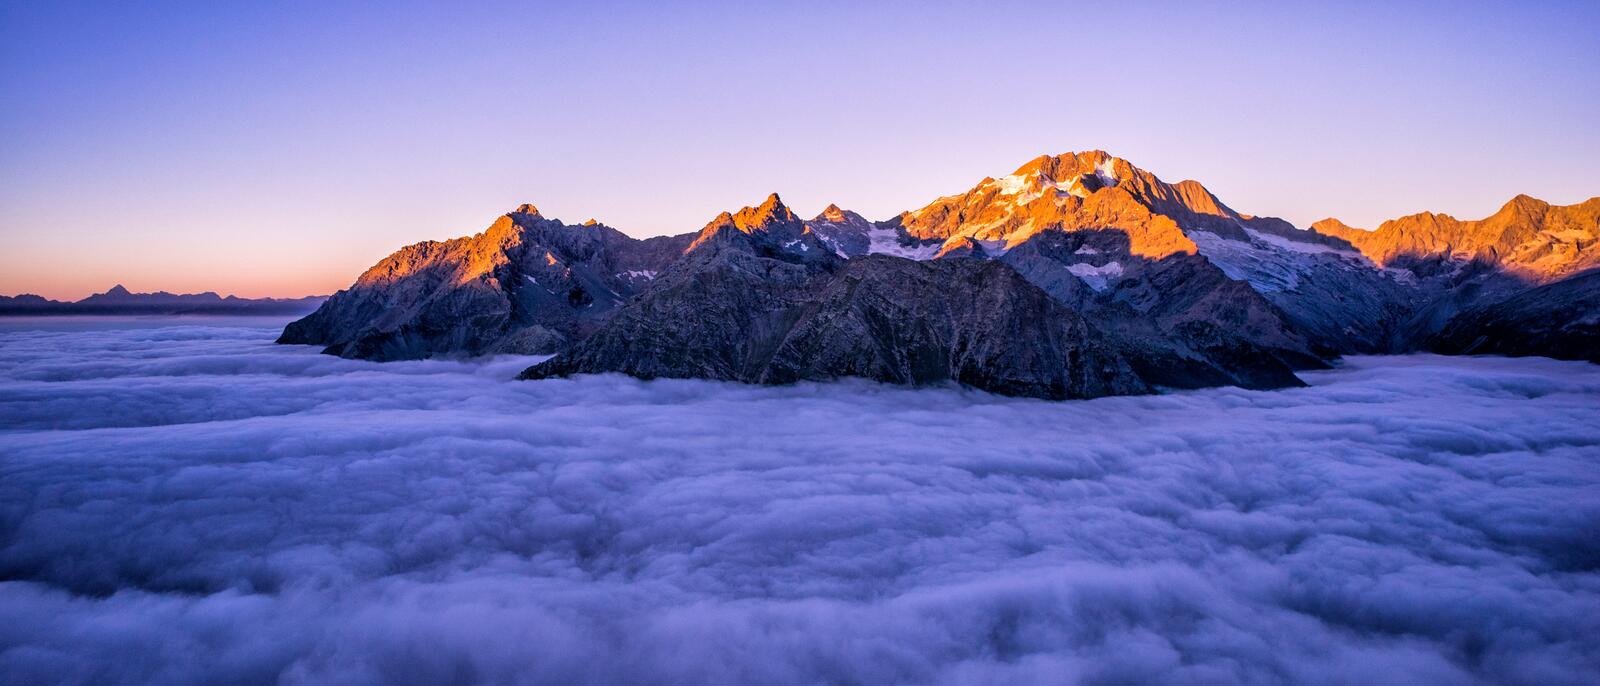 Бесплатное фото Густые облака скрывающие вершины гор